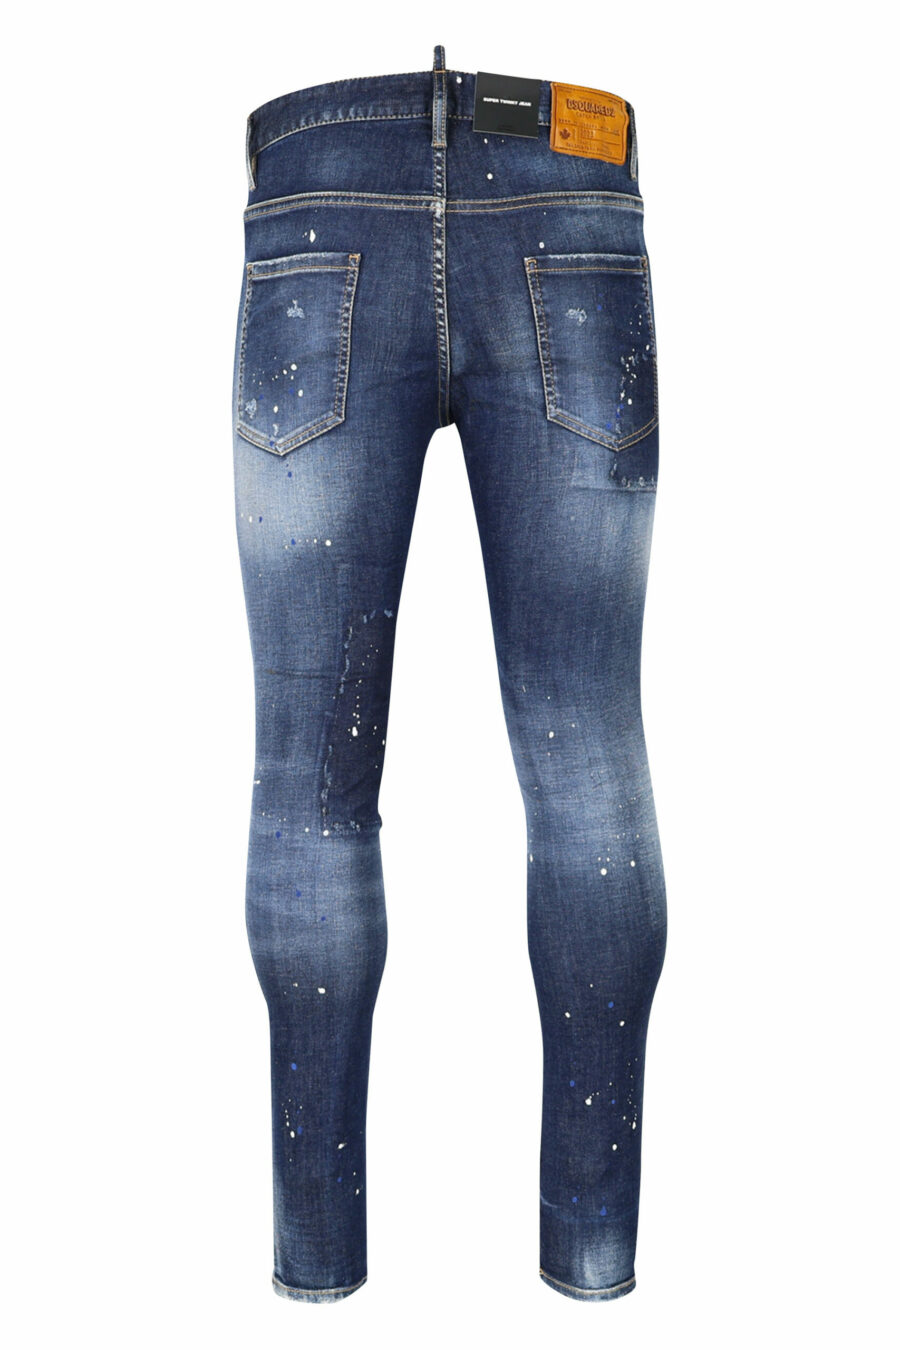 Jean bleu "super twinky jean" avec patch et effiloché - 8054148104863 2 échelles